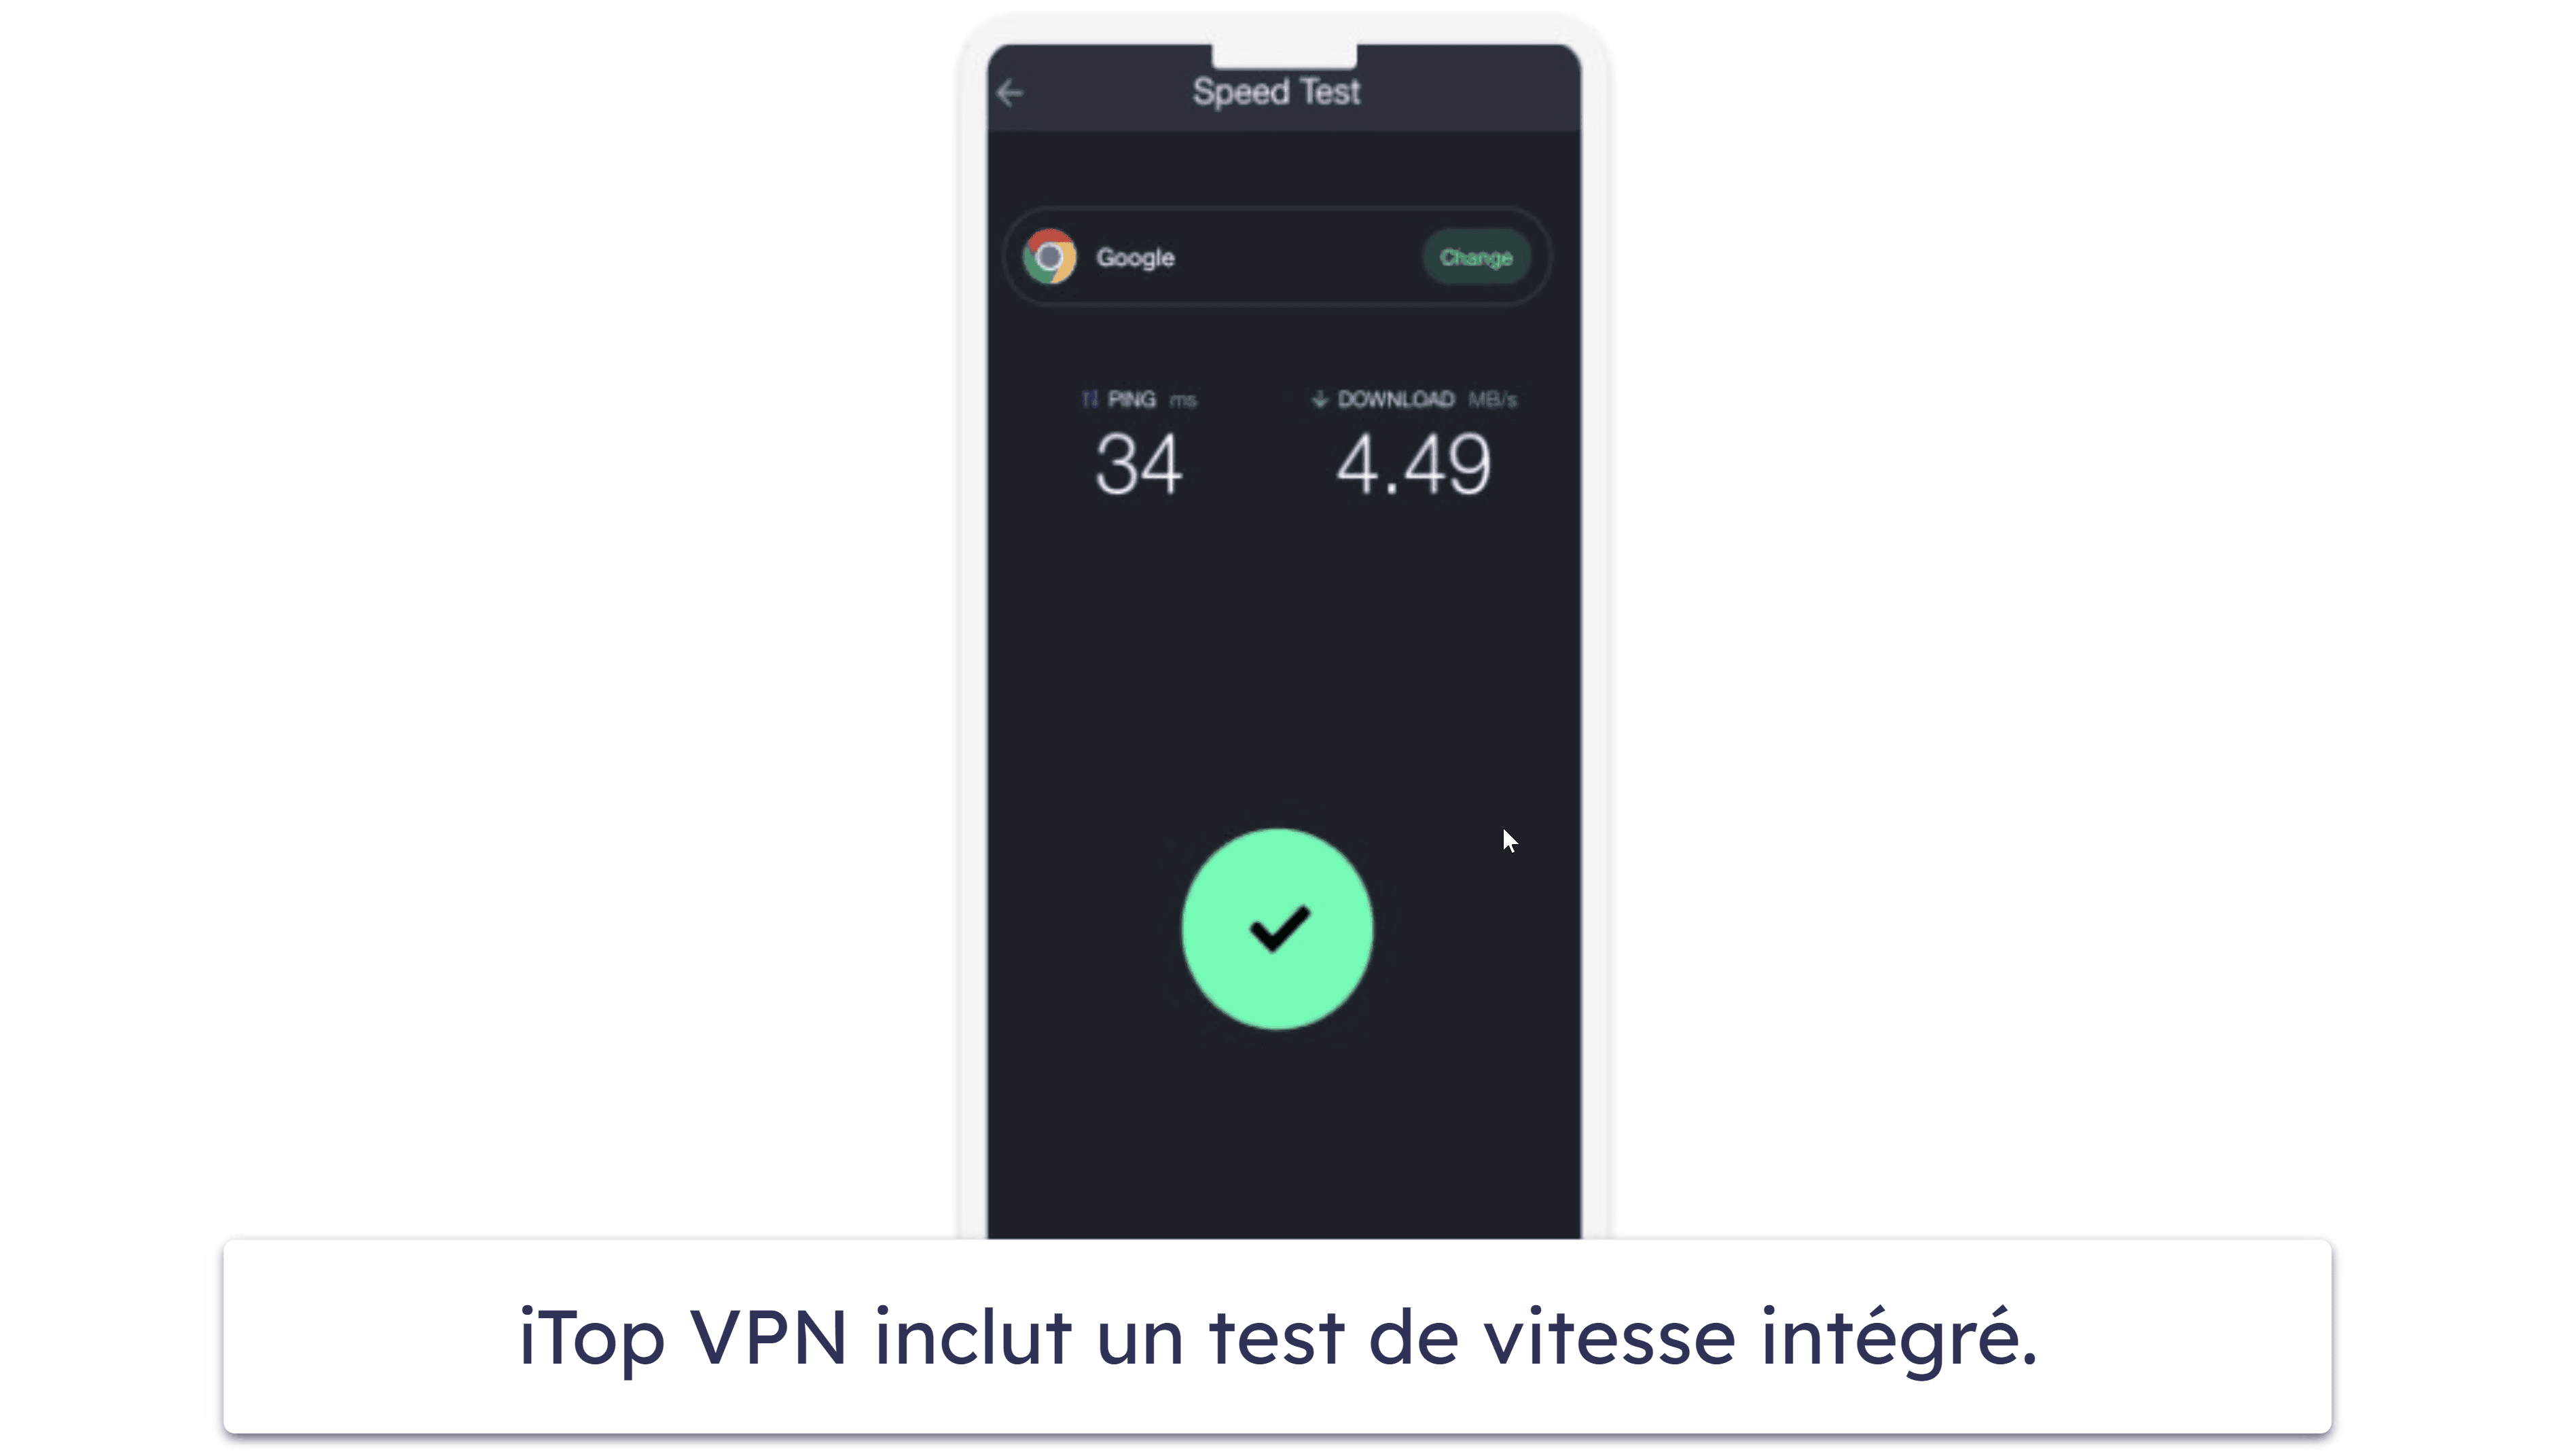 Fonctionnalités du VPN iTop